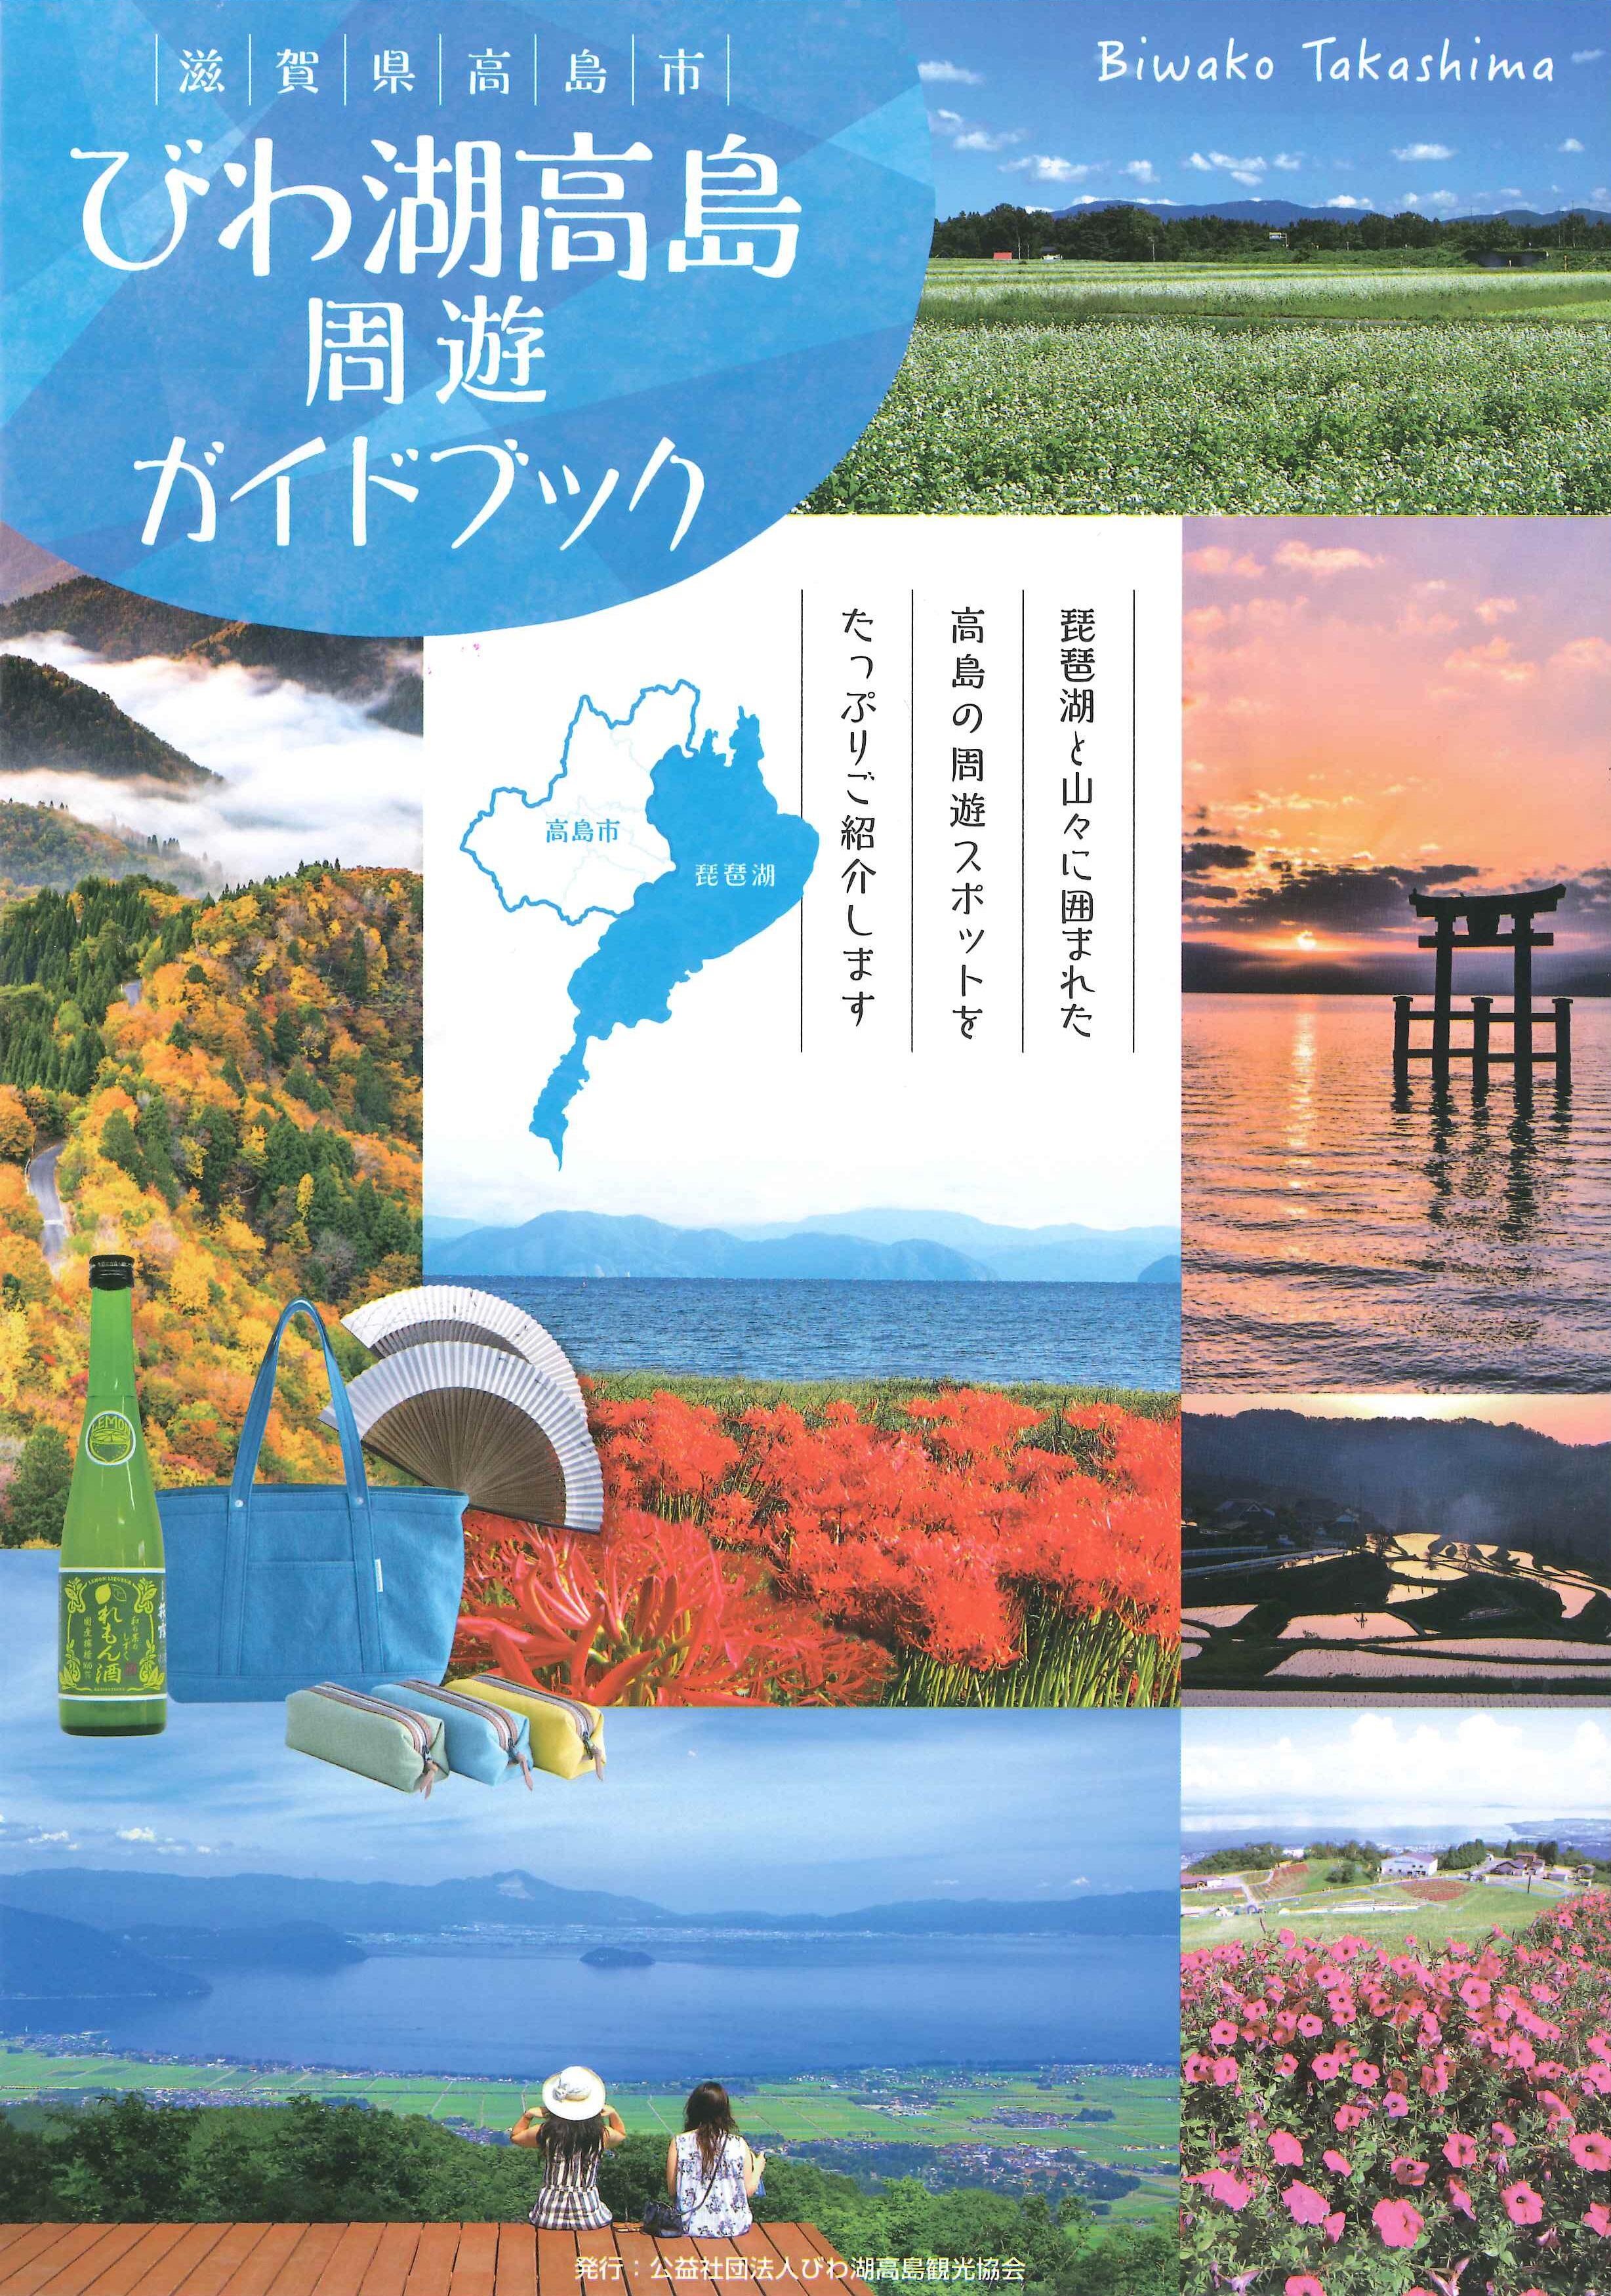 びわ湖高島周遊ガイドブック